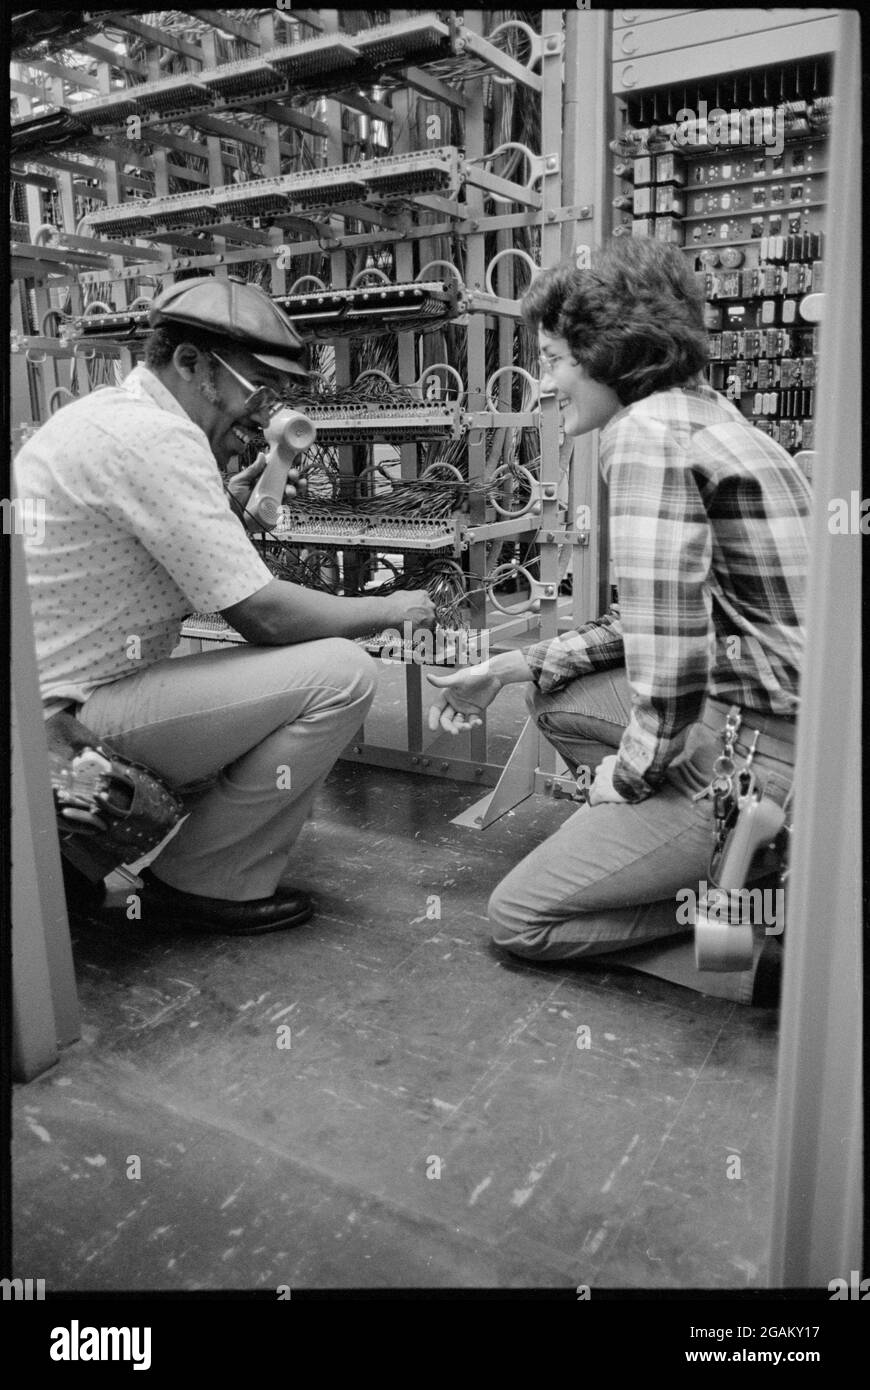 Photo de deux travailleurs minoritaires de la compagnie de téléphone - un homme afro-américain et une femme - travaillant sur du matériel téléphonique à l'intérieur, sans emplacement, 3/6/1979. (Photo de Thomas J O'Halloran/US News & World Report Collection/RBM Vintage Images) Banque D'Images